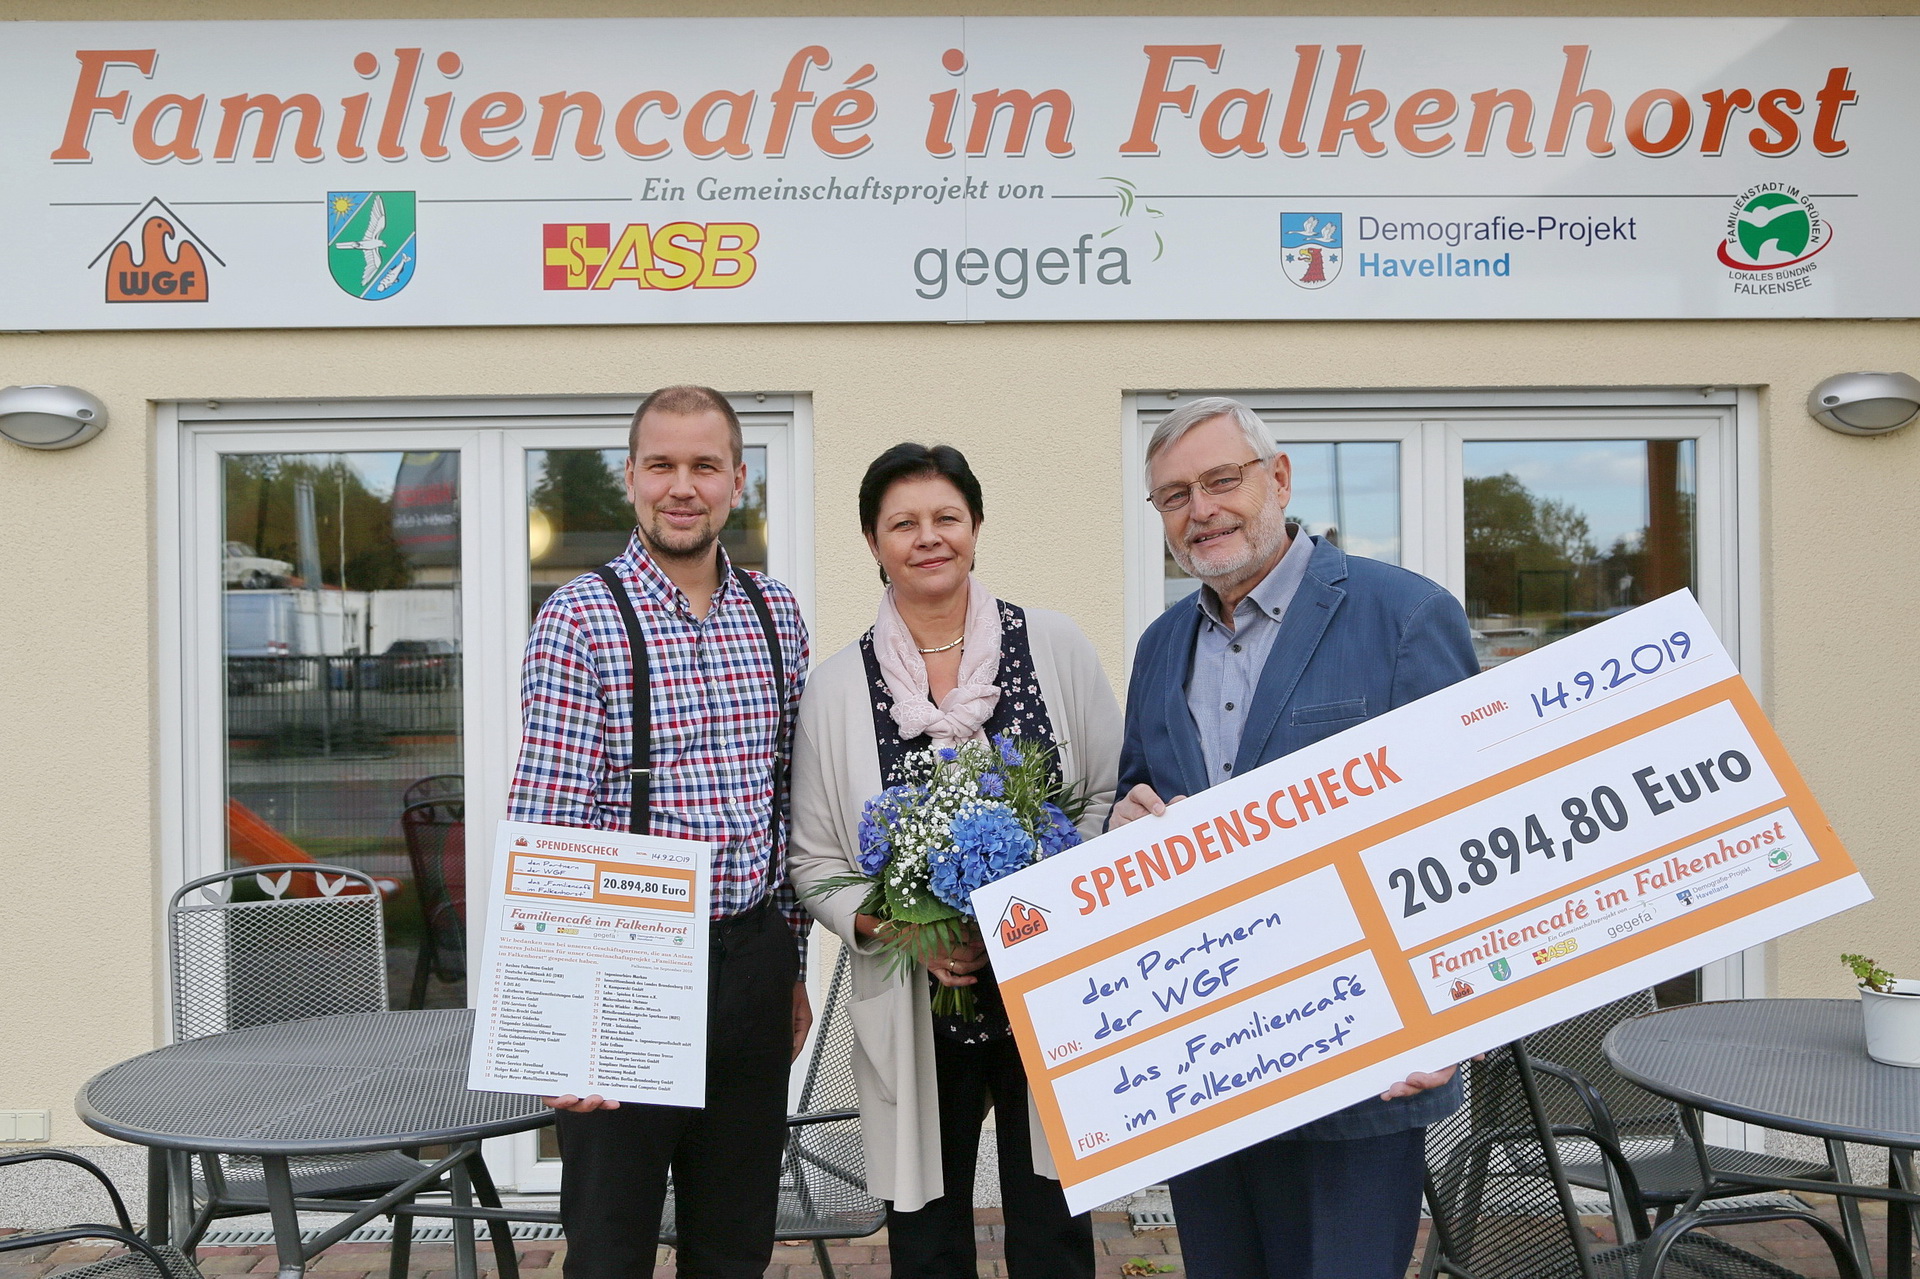 Familiencafé erhält Spende in Höhe von 20.894,80 €.